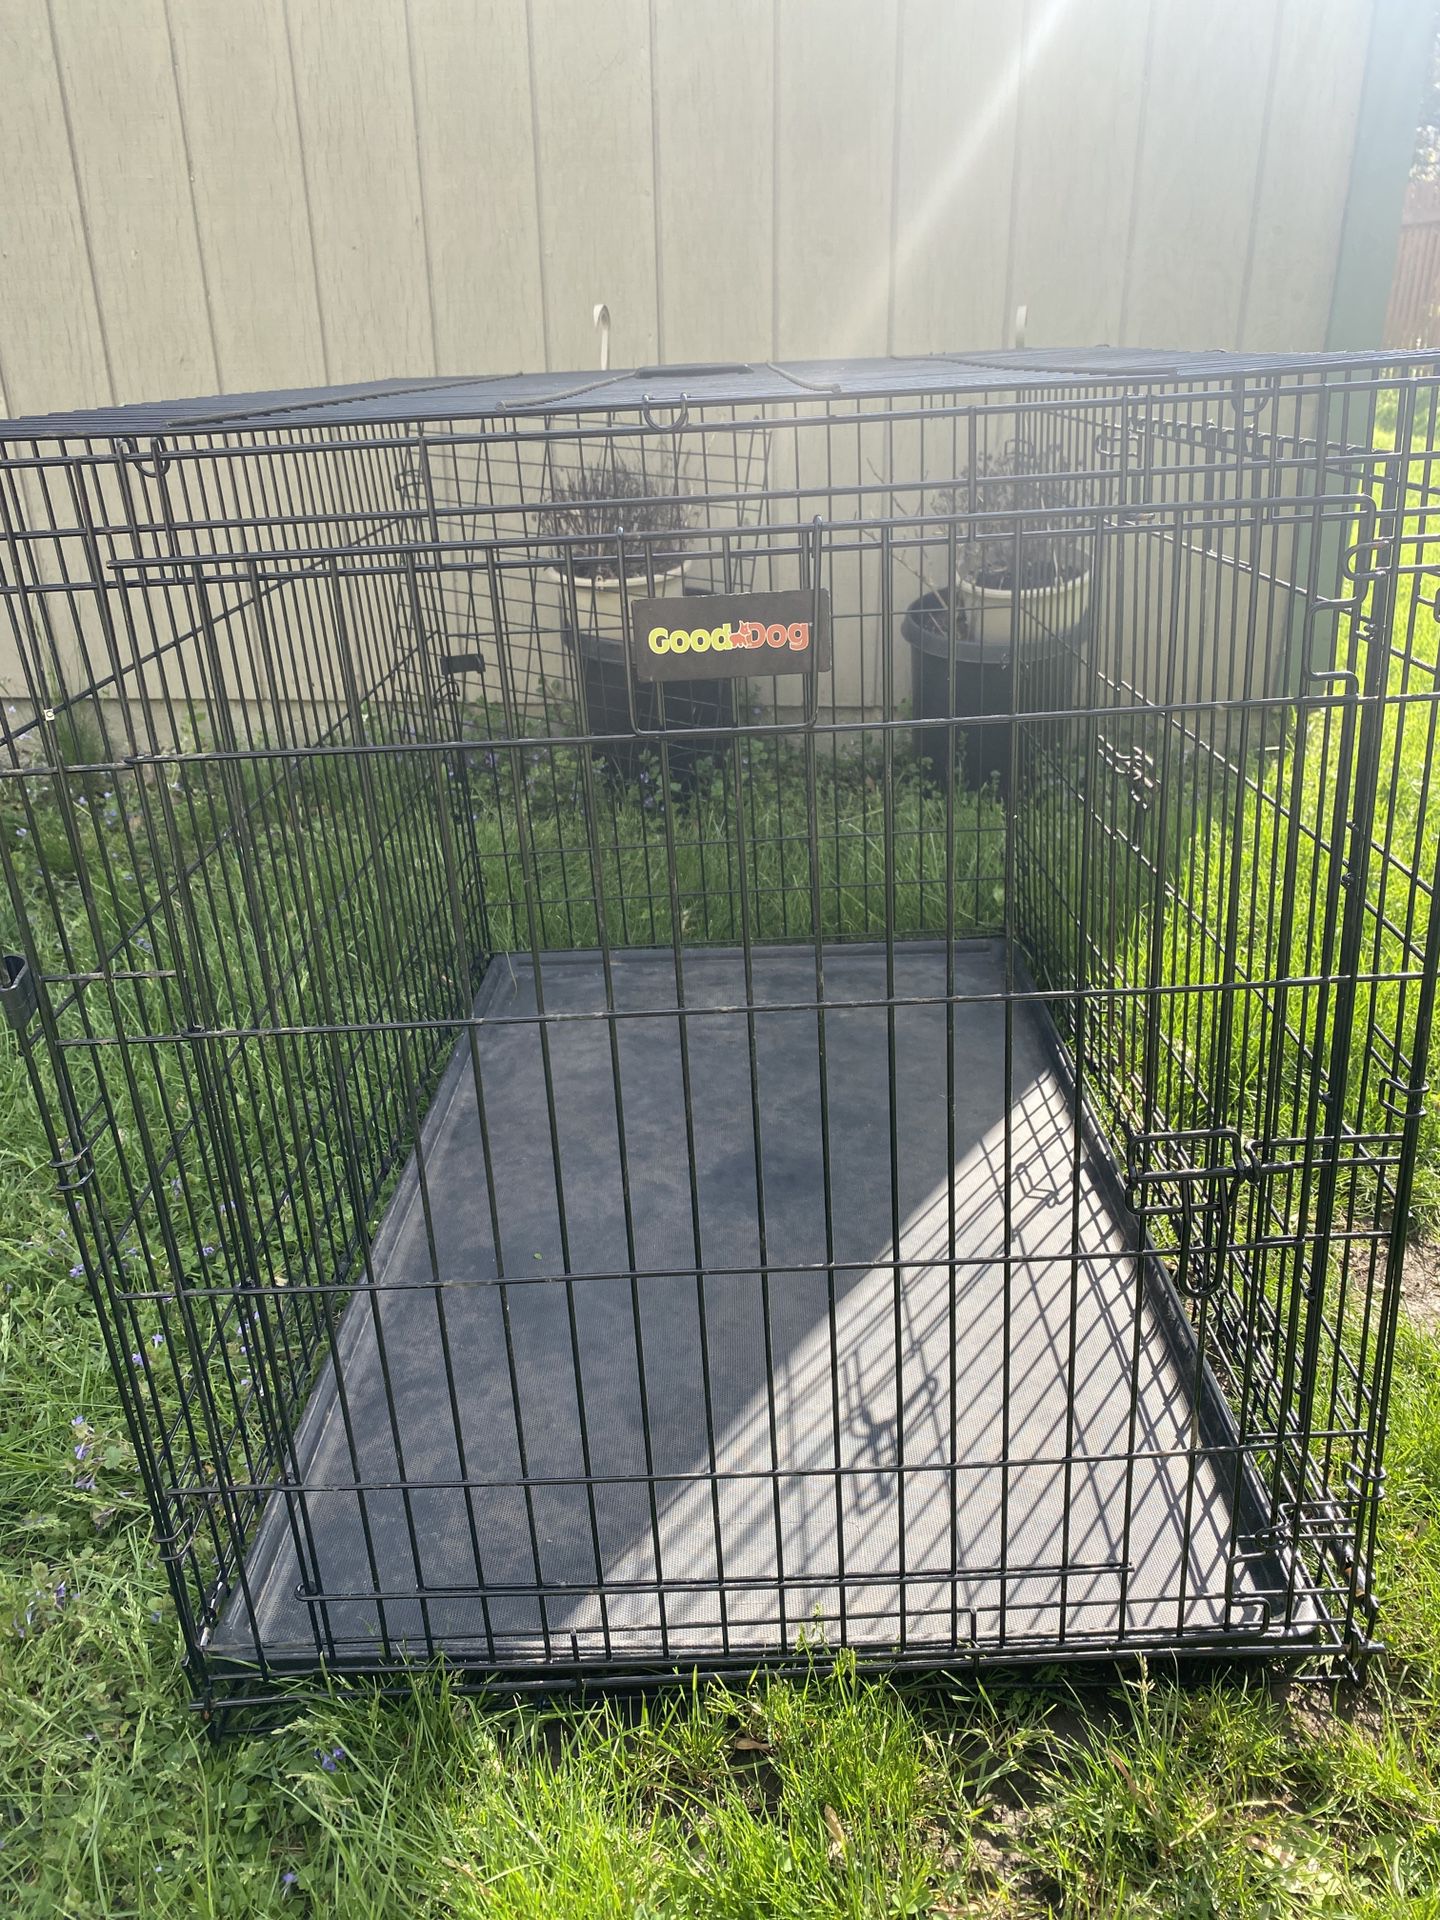 Good Dog X Large Cage